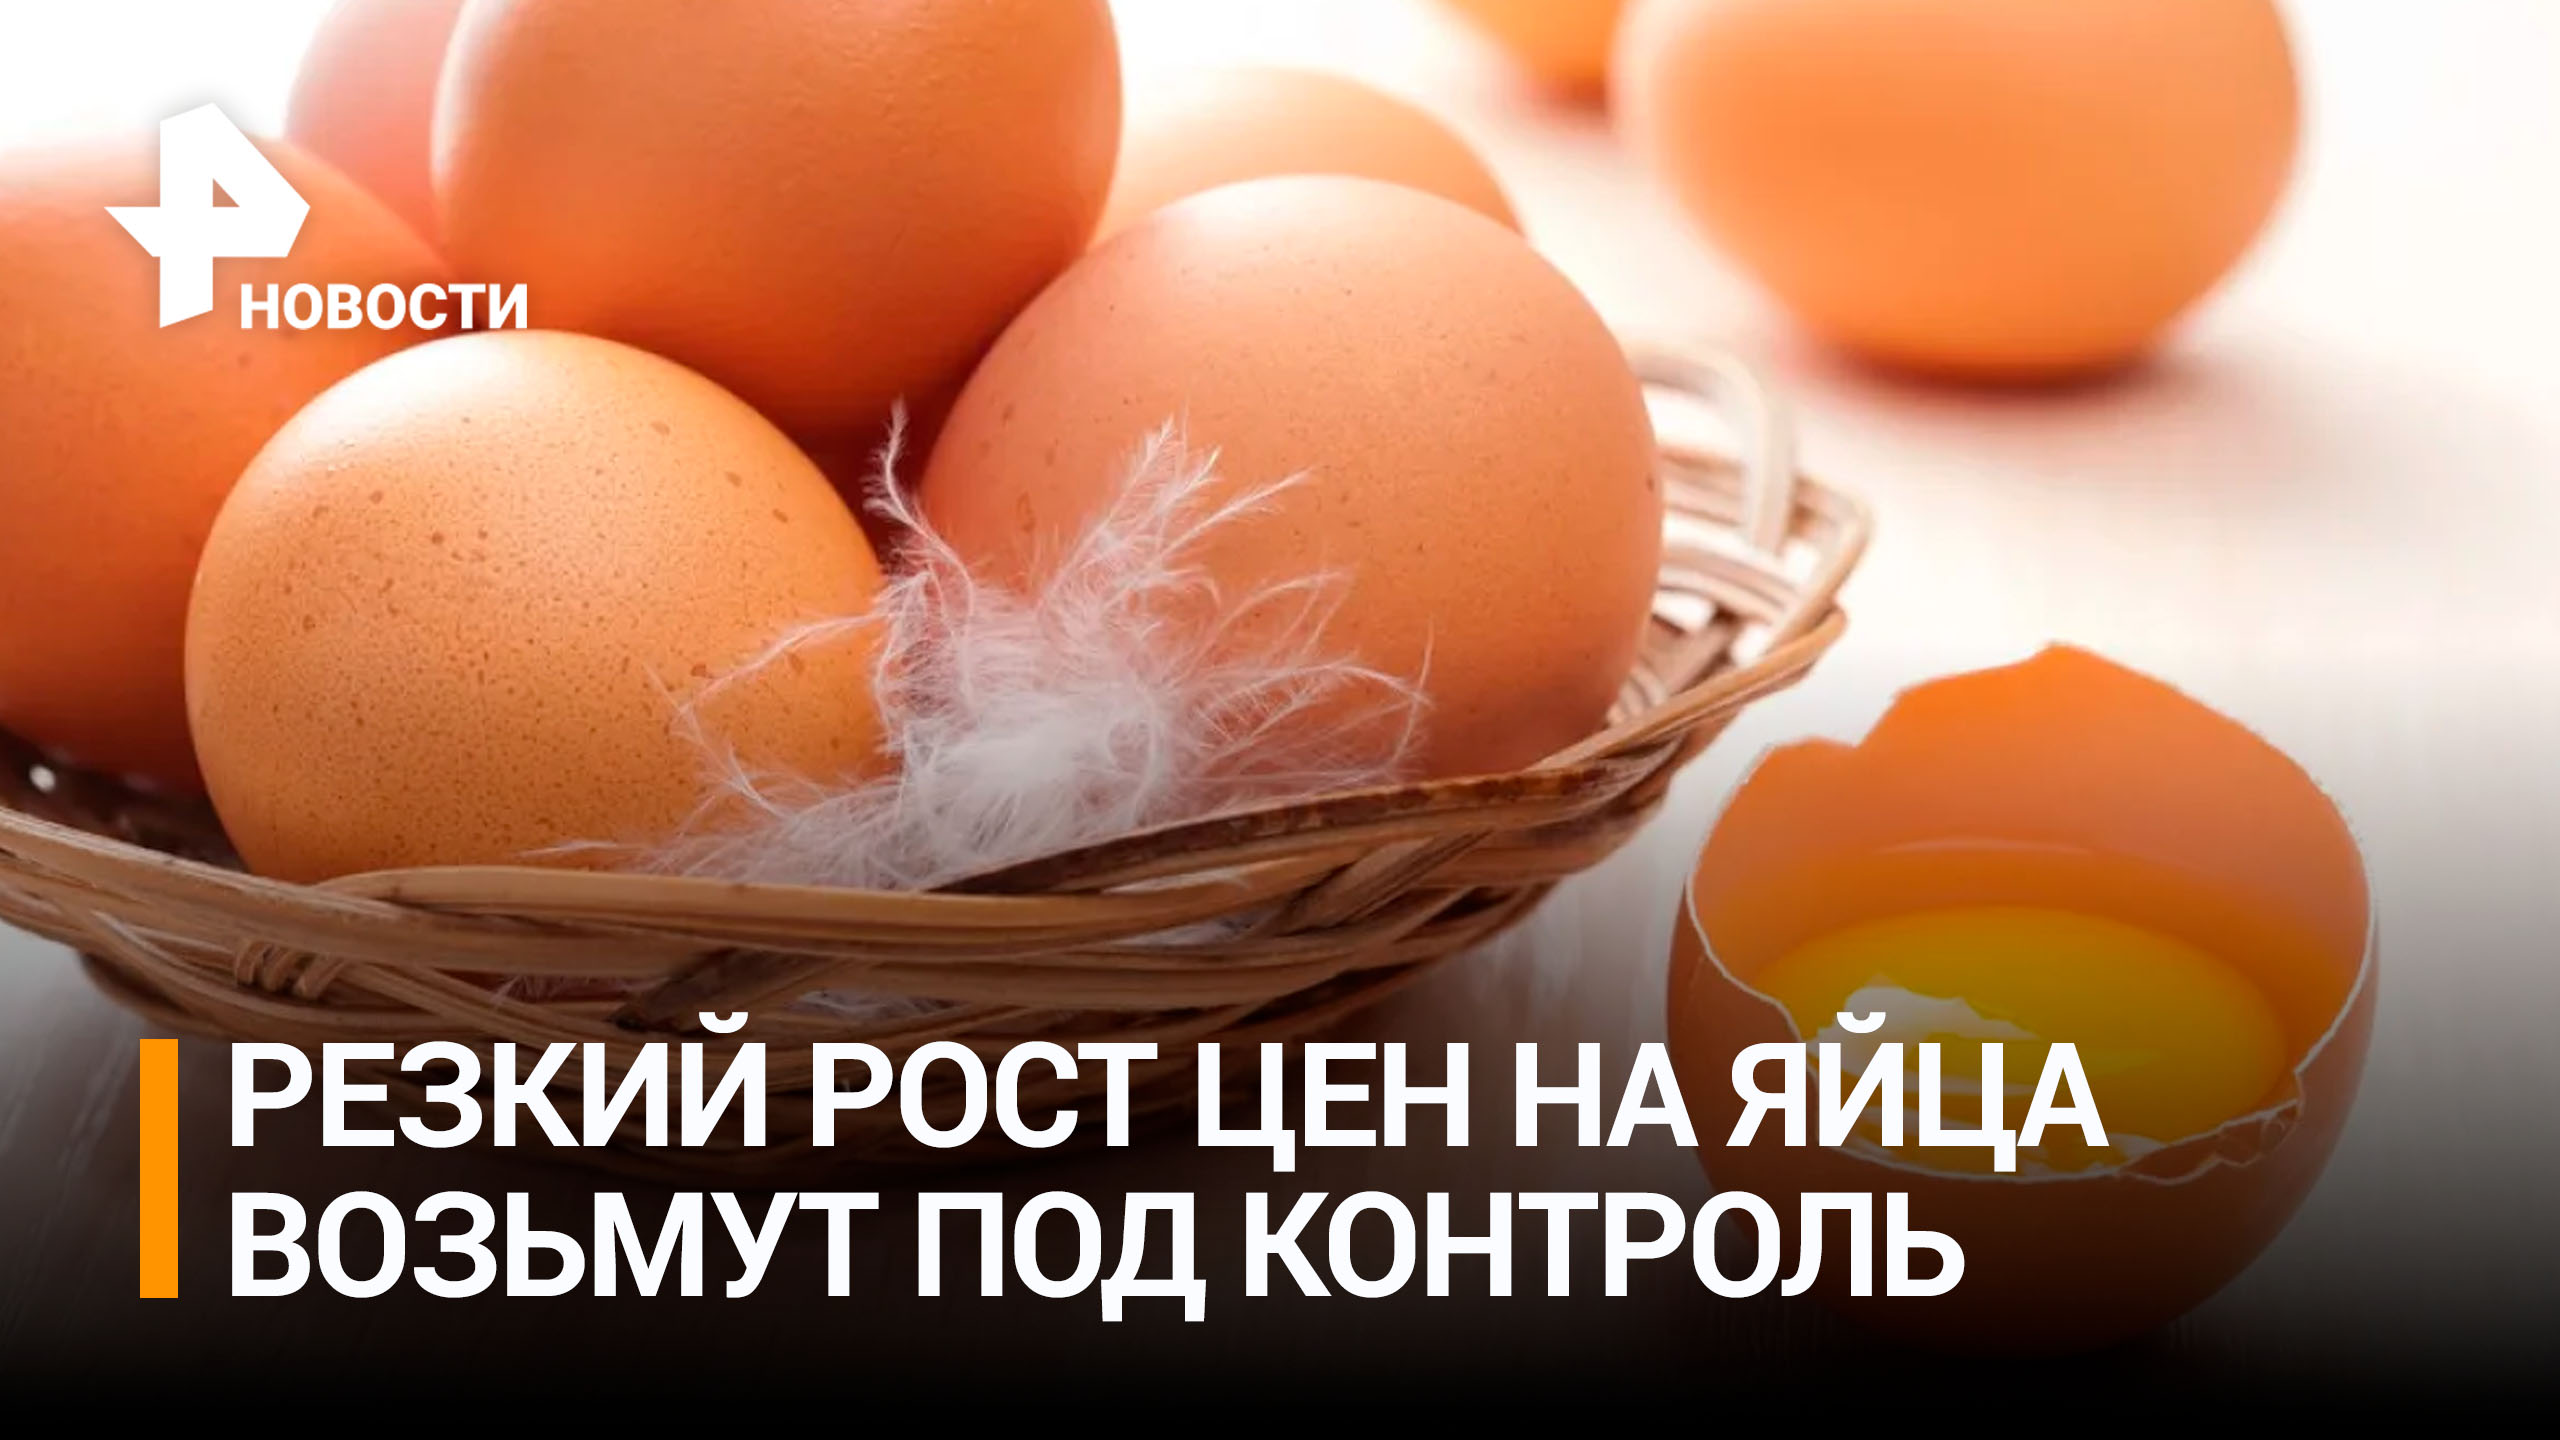 Правительство РФ подготовило меры по стабилизации цен на яйца / РЕН Новости